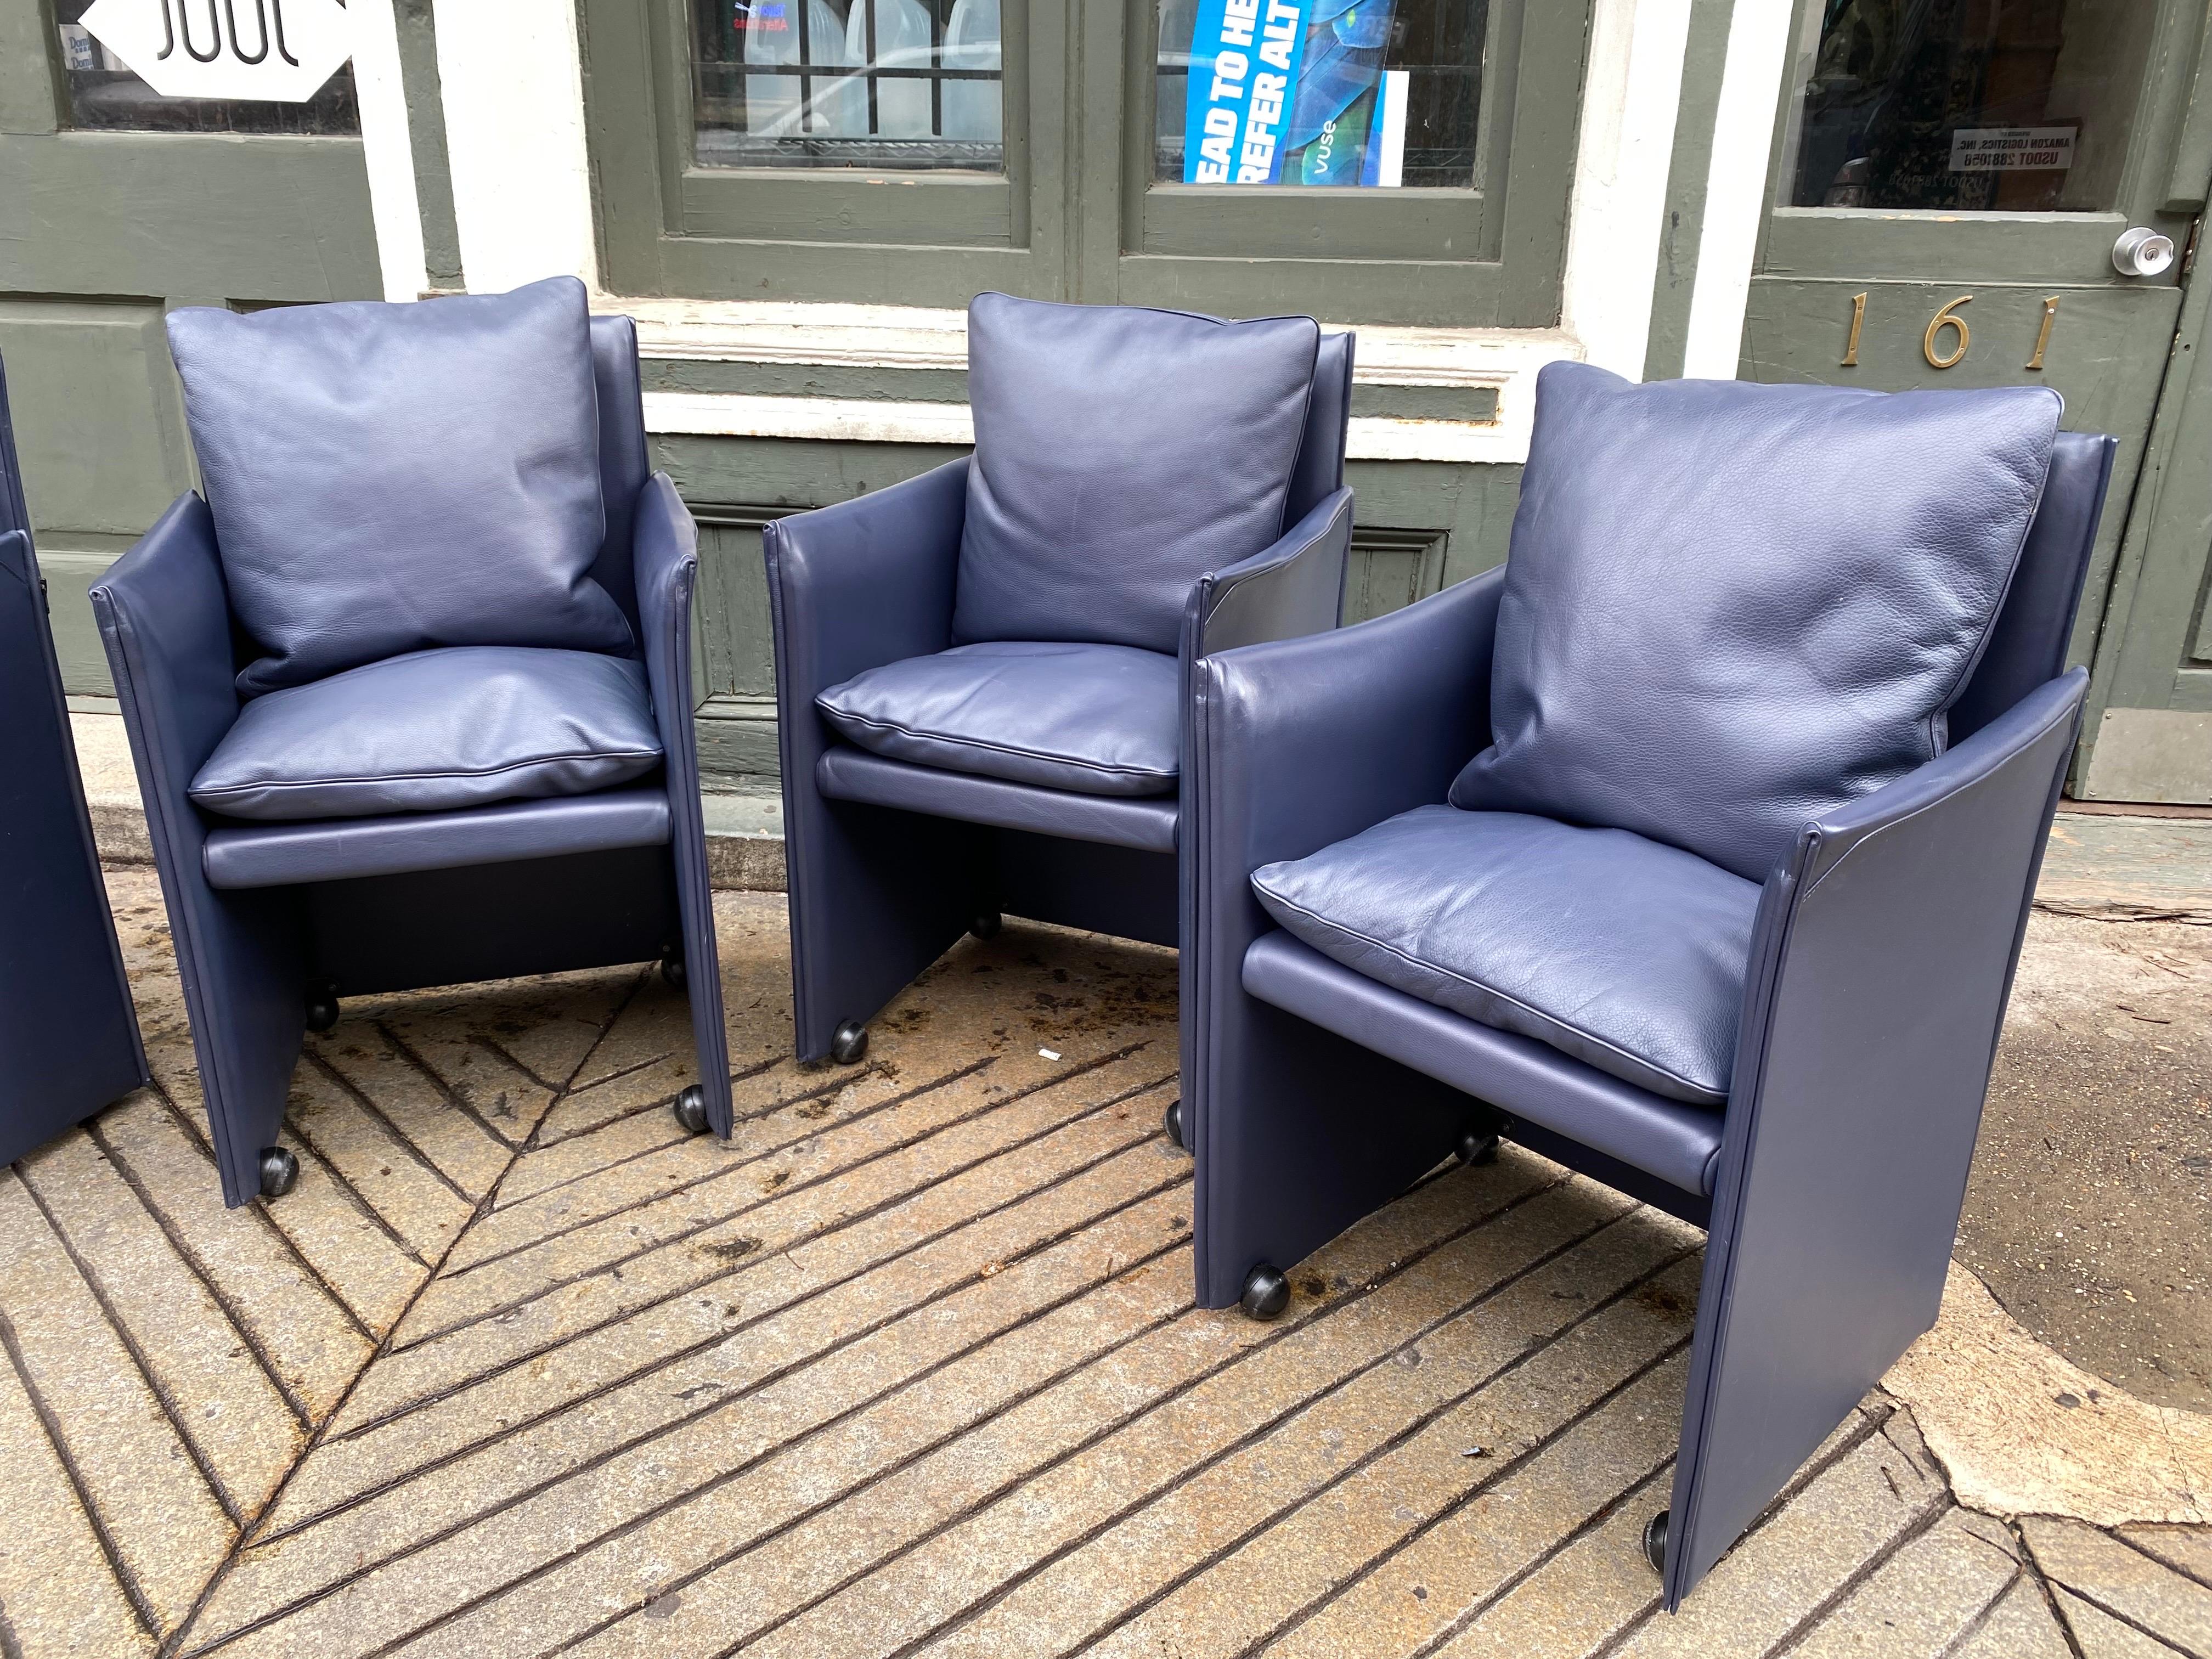 Ensemble de 6 fauteuils Break Mario Bellini en cuir bleu foncé de première qualité.  Les coussins garnis de duvet ajoutent style et confort à ces chaises !  2 Autres modèles sans bras également disponibles !  Les chaises roulent facilement et ont